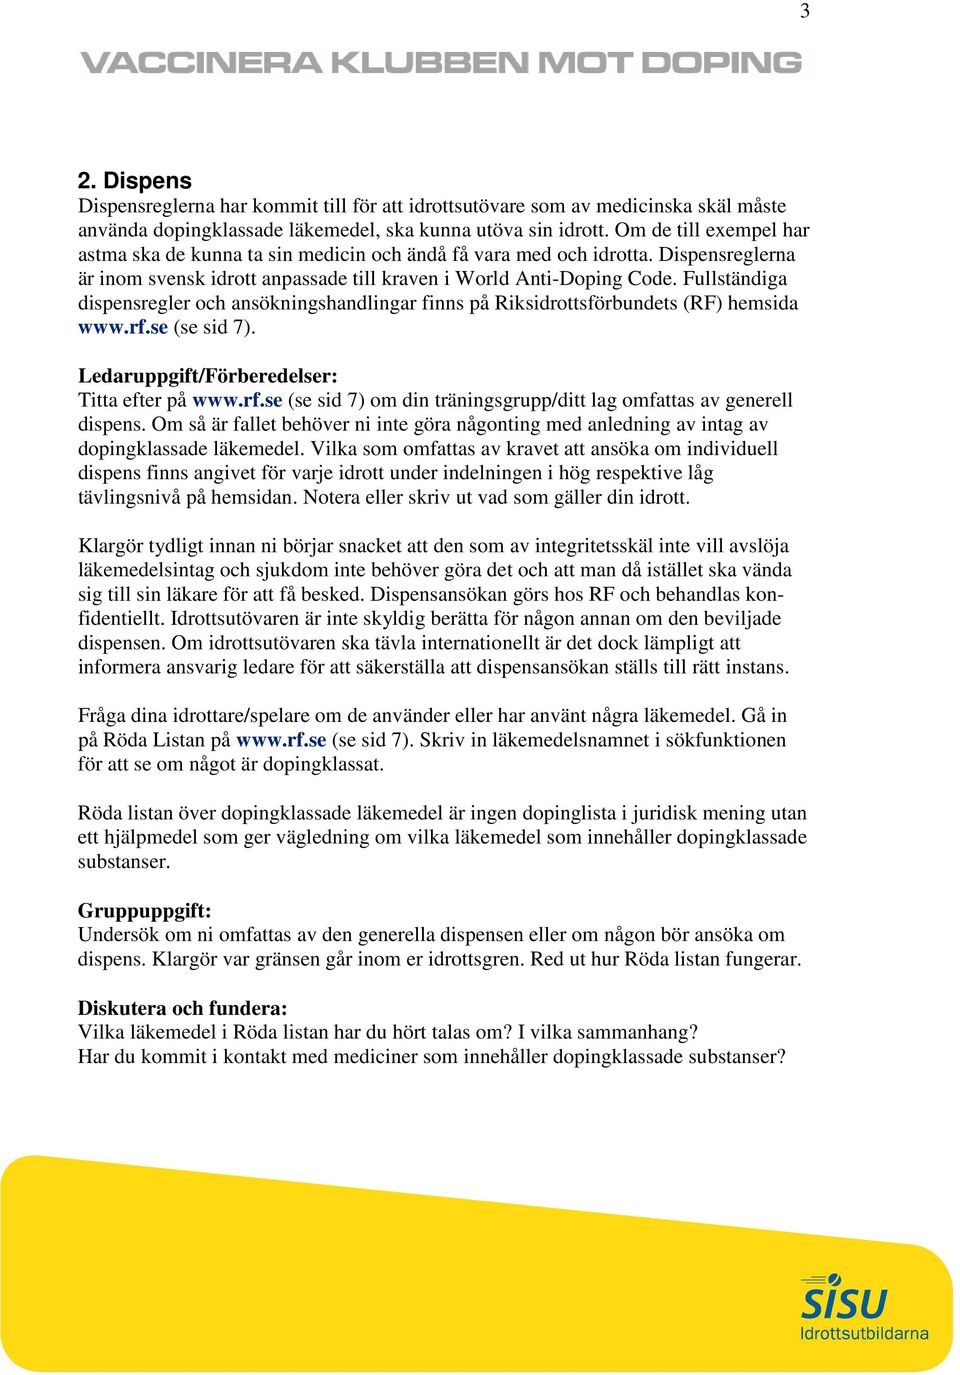 Fullständiga dispensregler och ansökningshandlingar finns på Riksidrottsförbundets (RF) hemsida www.rf.se (se sid 7). Titta efter på www.rf.se (se sid 7) om din träningsgrupp/ditt lag omfattas av generell dispens.